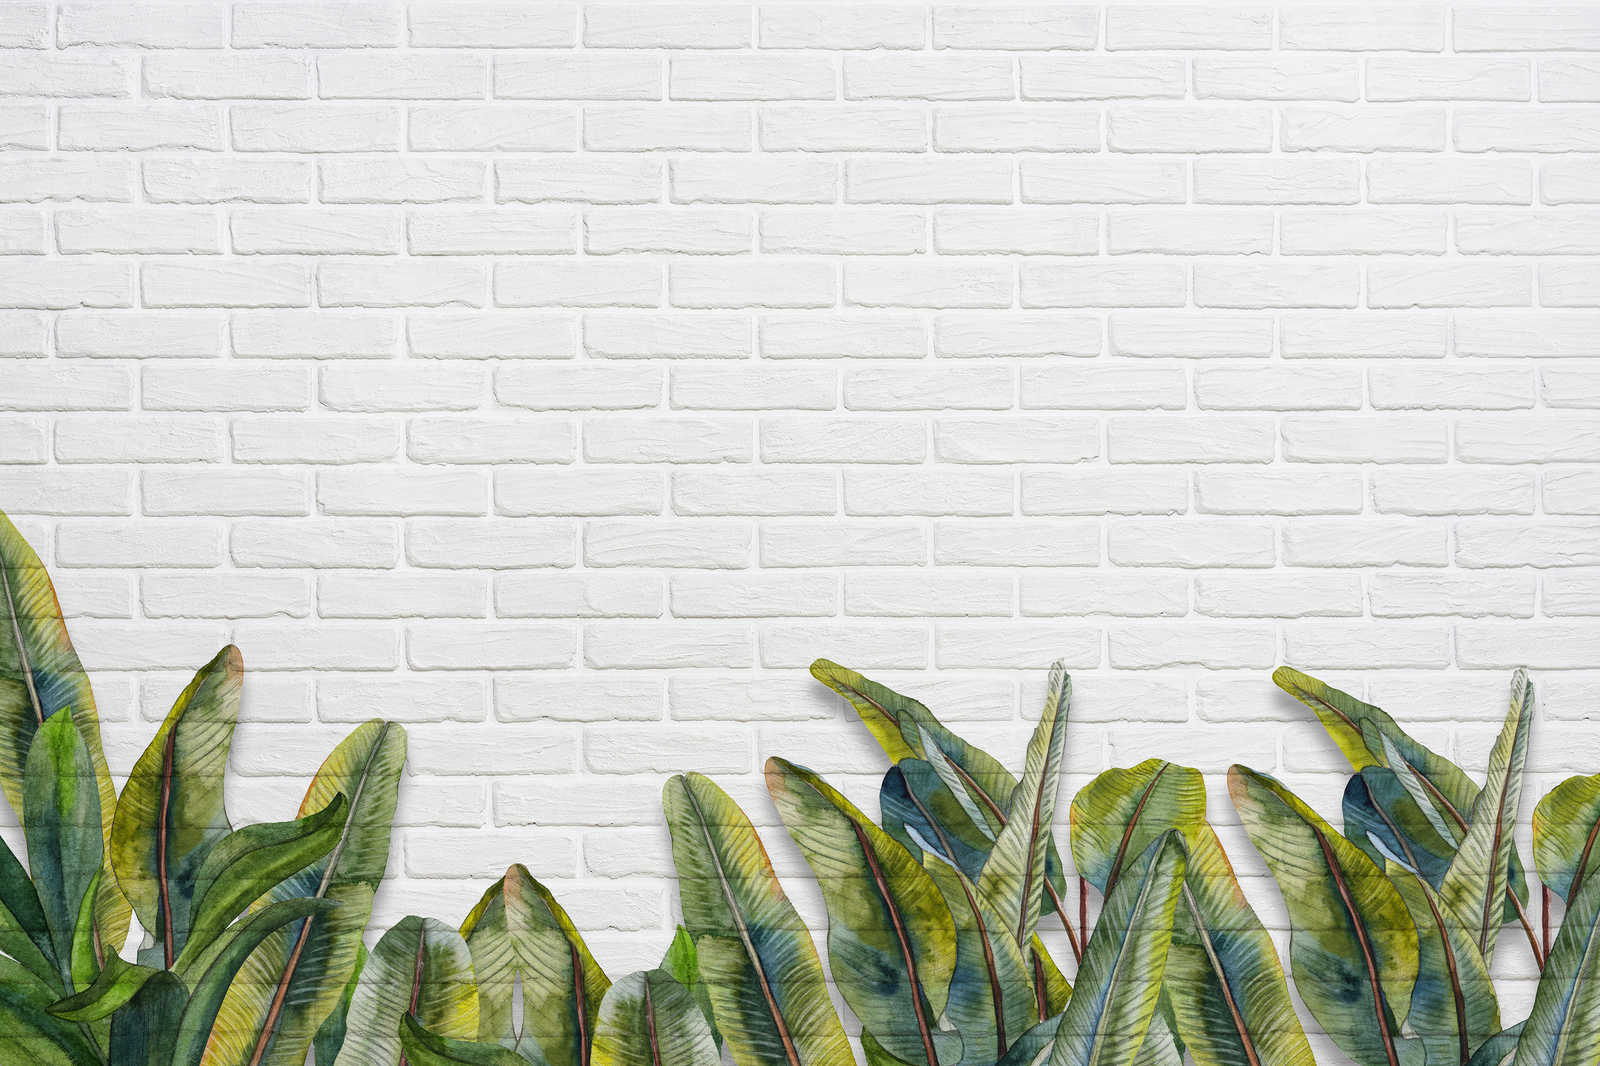             Toile avec feuilles devant un mur de briques blanches - 0,90 m x 0,60 m
        